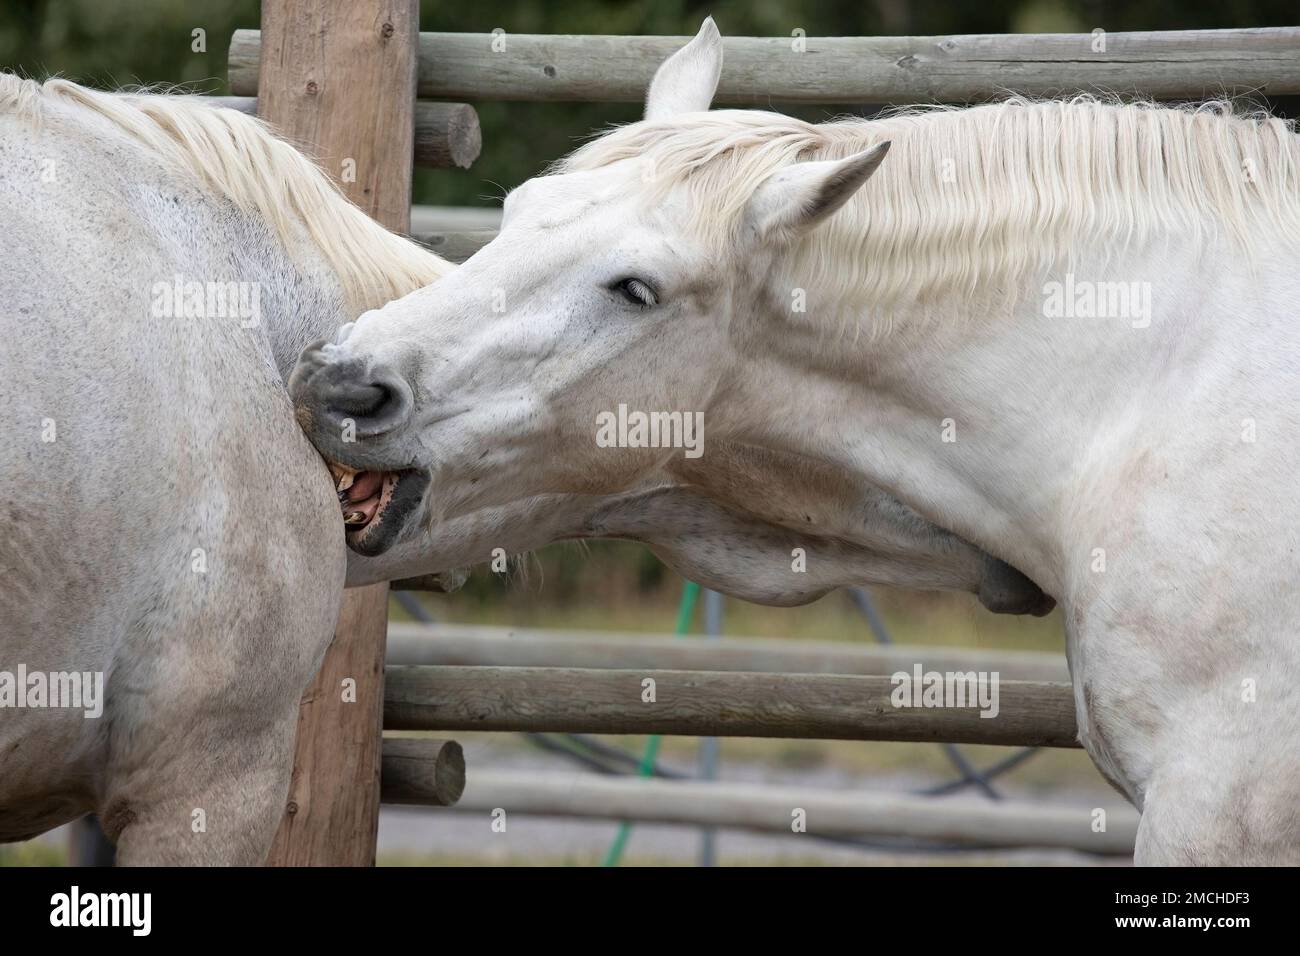 Percheron traite les chevaux en se grattant les uns les autres sur l'épaule avec leurs dents. Lieu historique national de Bar U Ranch, Alberta, Canada Banque D'Images